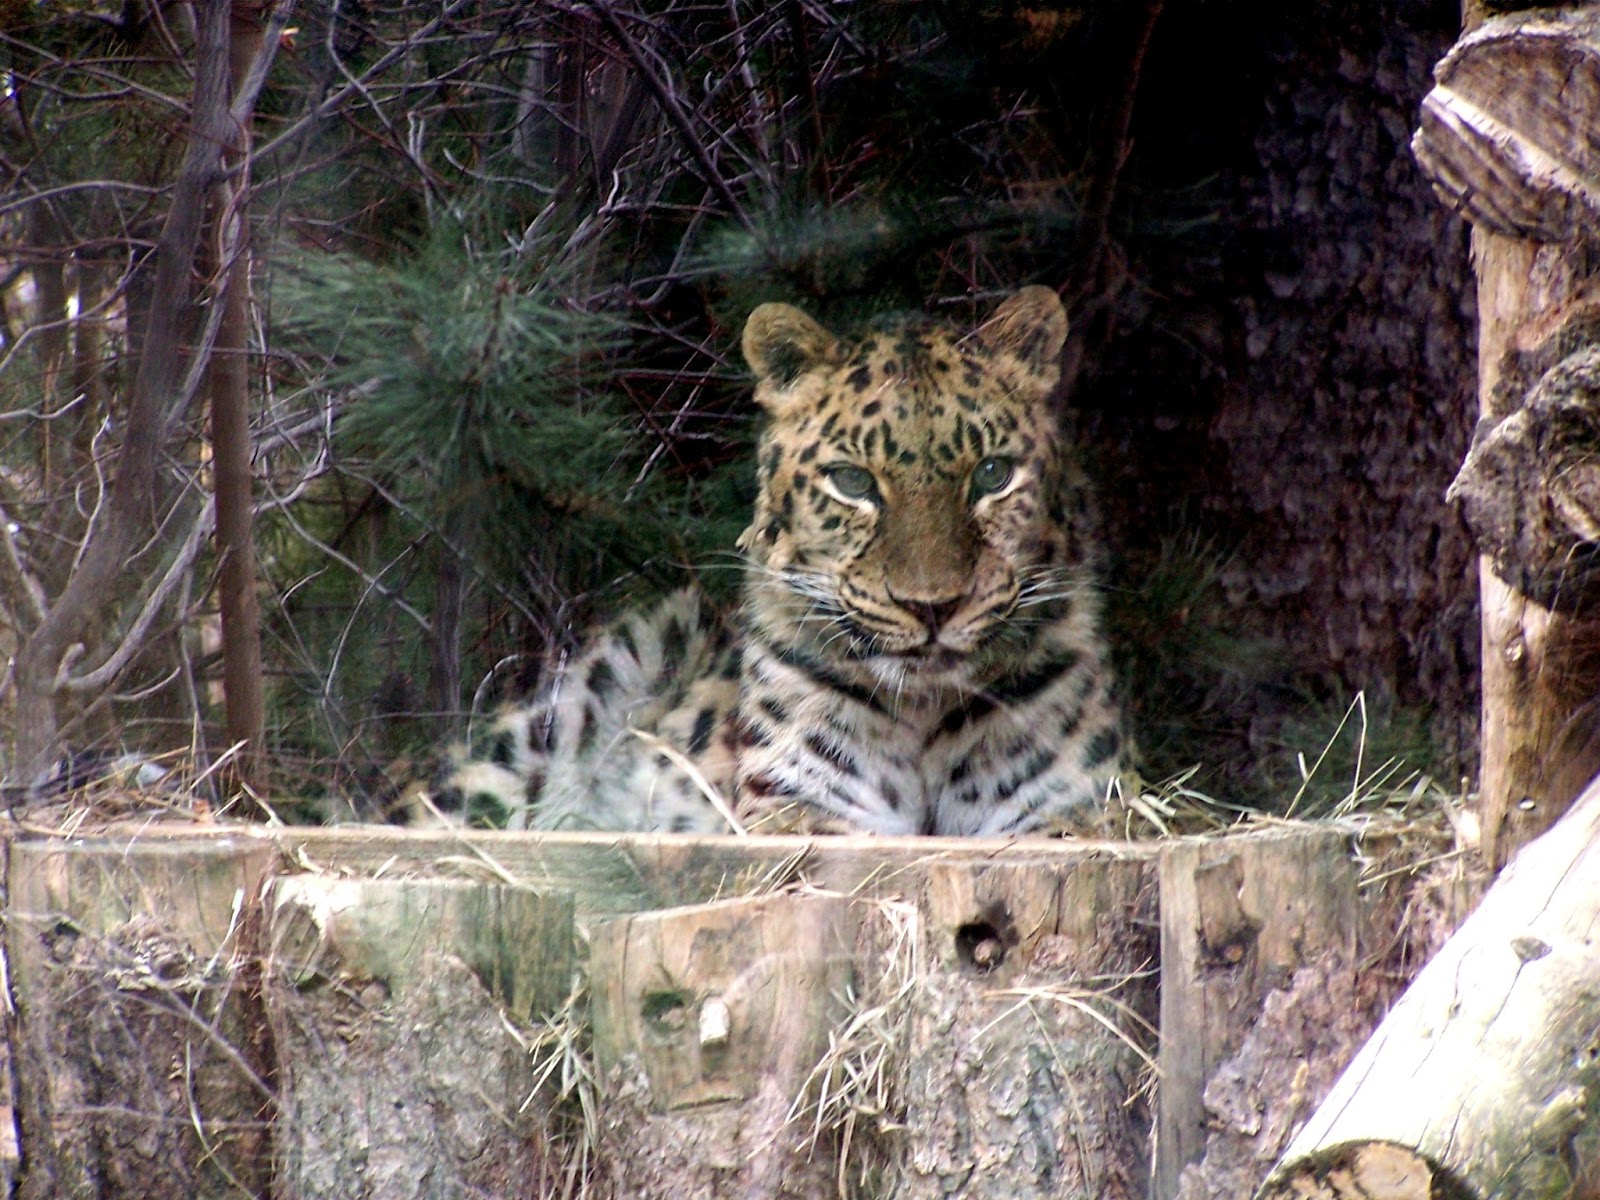 The Natural World: An Amur Leopard Upchucks